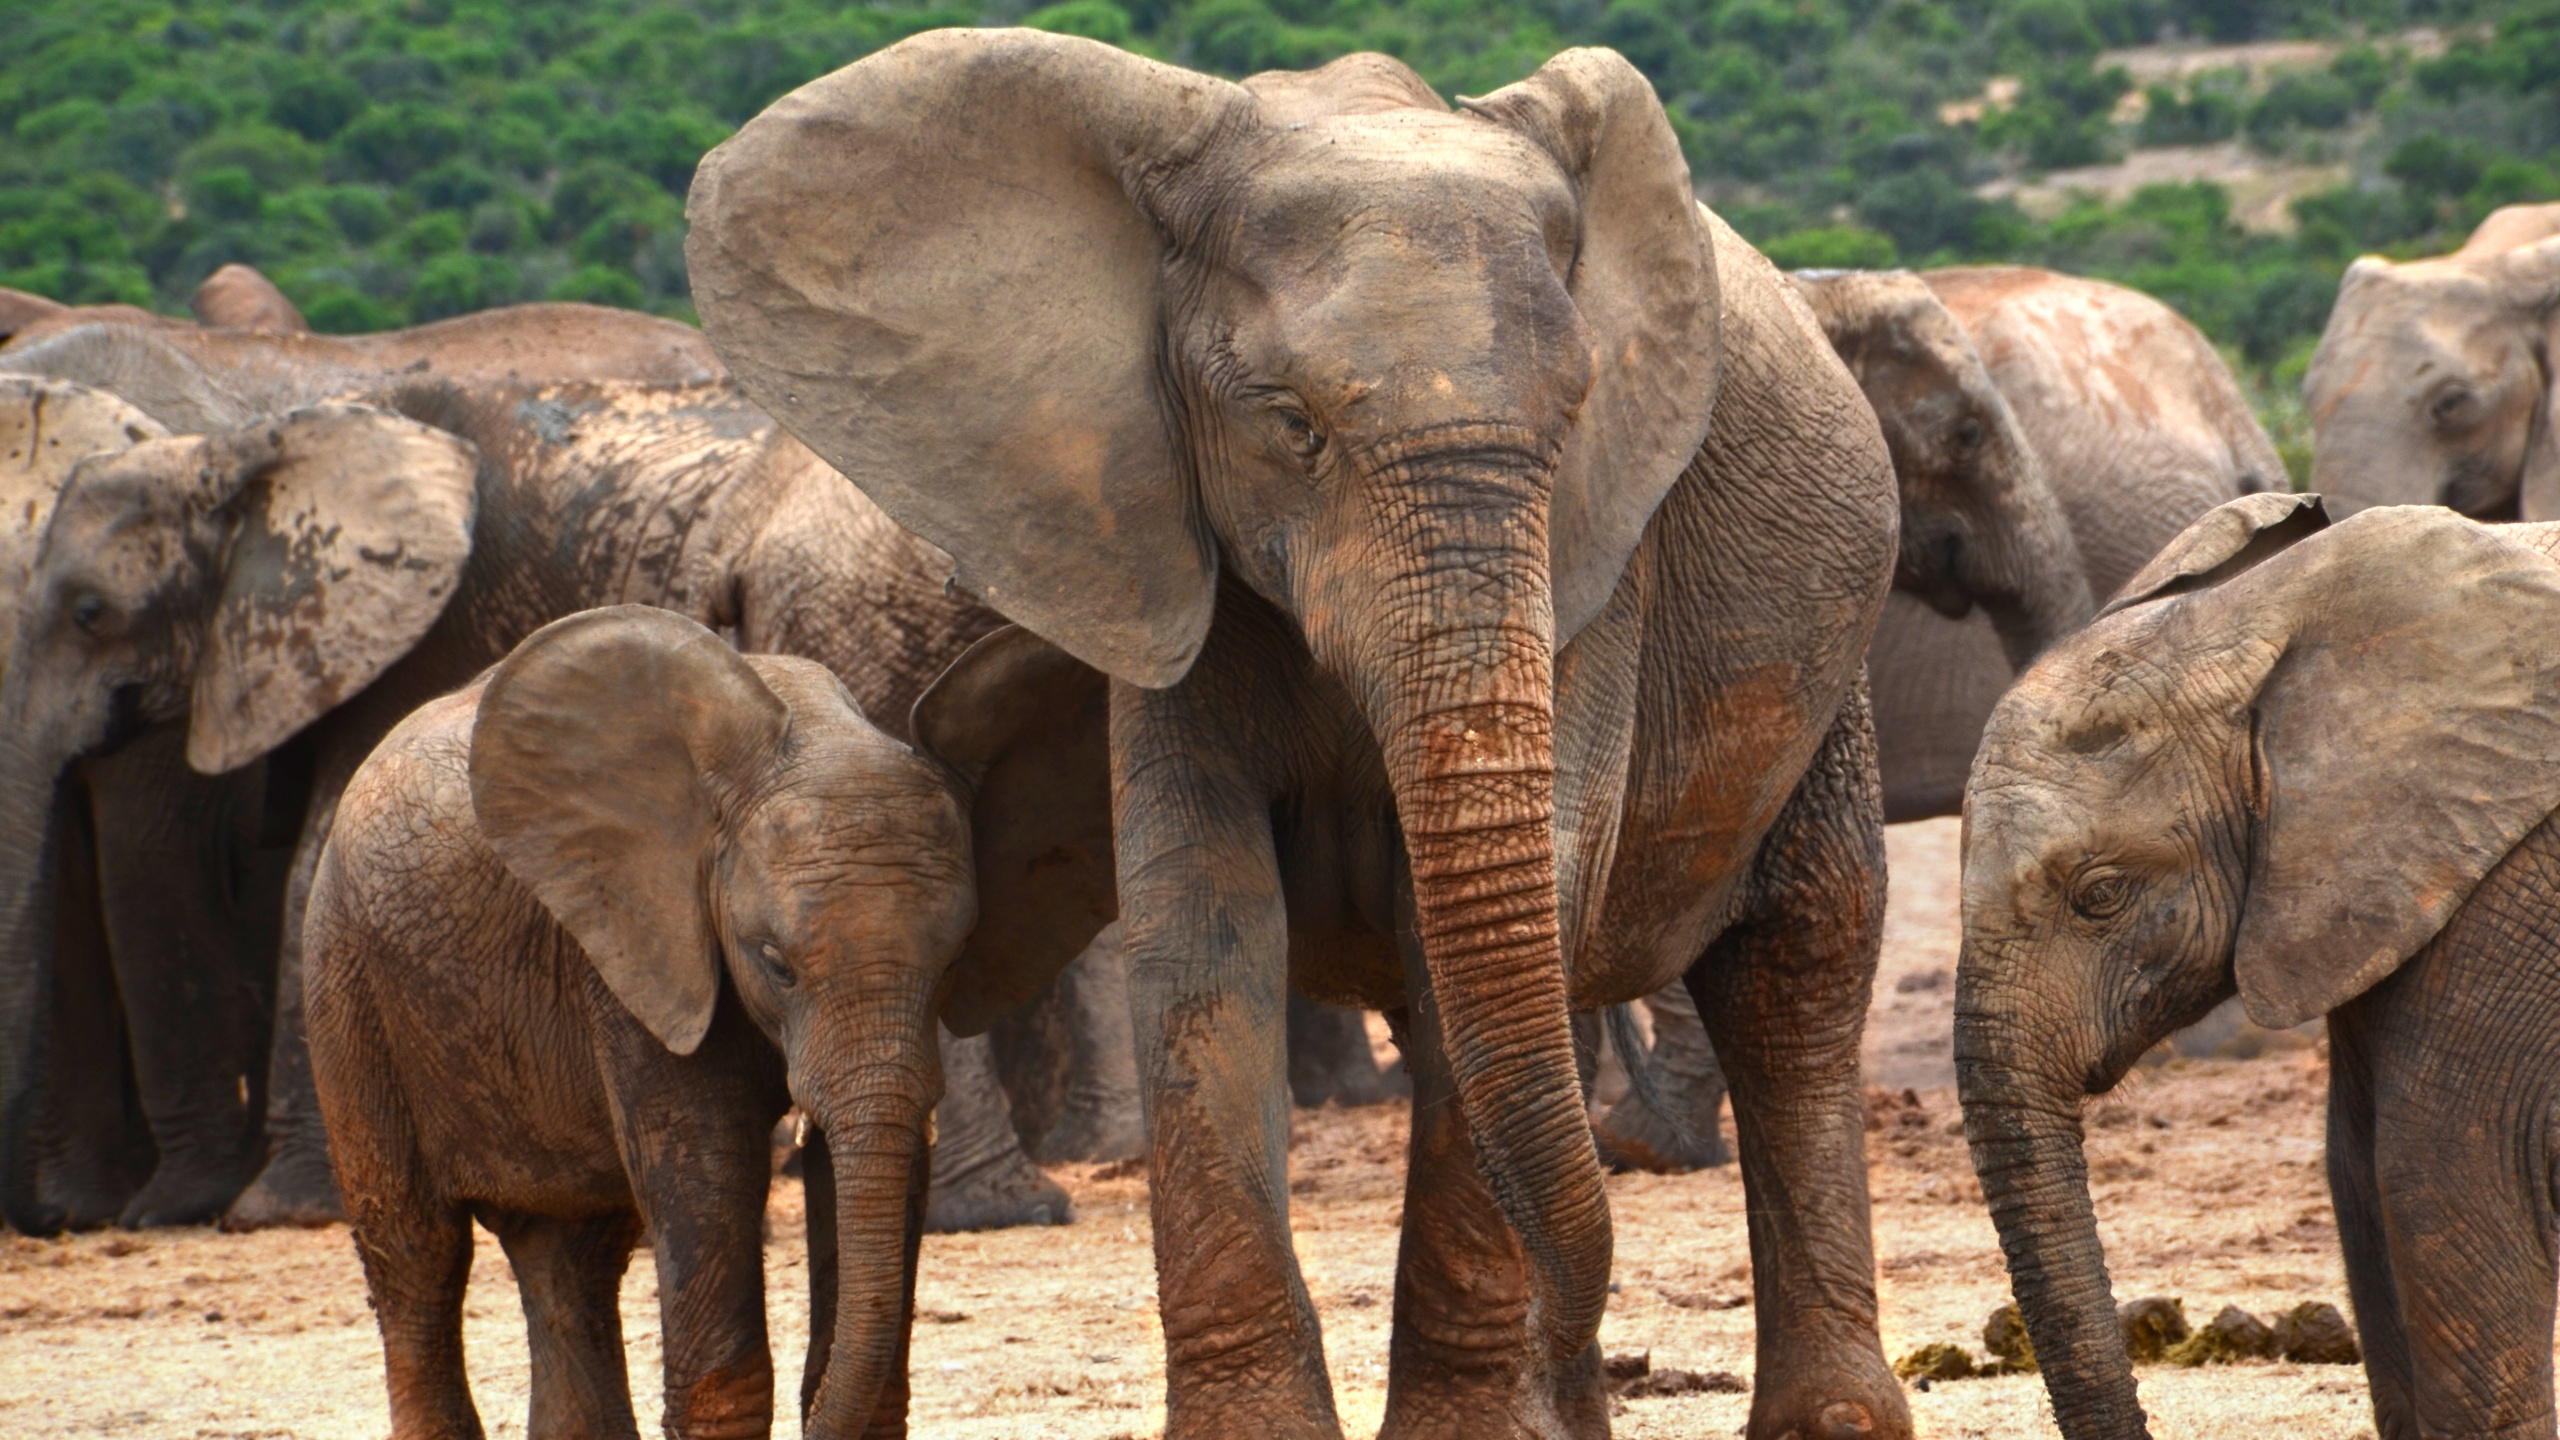 非洲丛林中的大象, 大象和猛犸象, 陆地动物, 野生动物, 印度大象 壁纸 2560x1440 允许